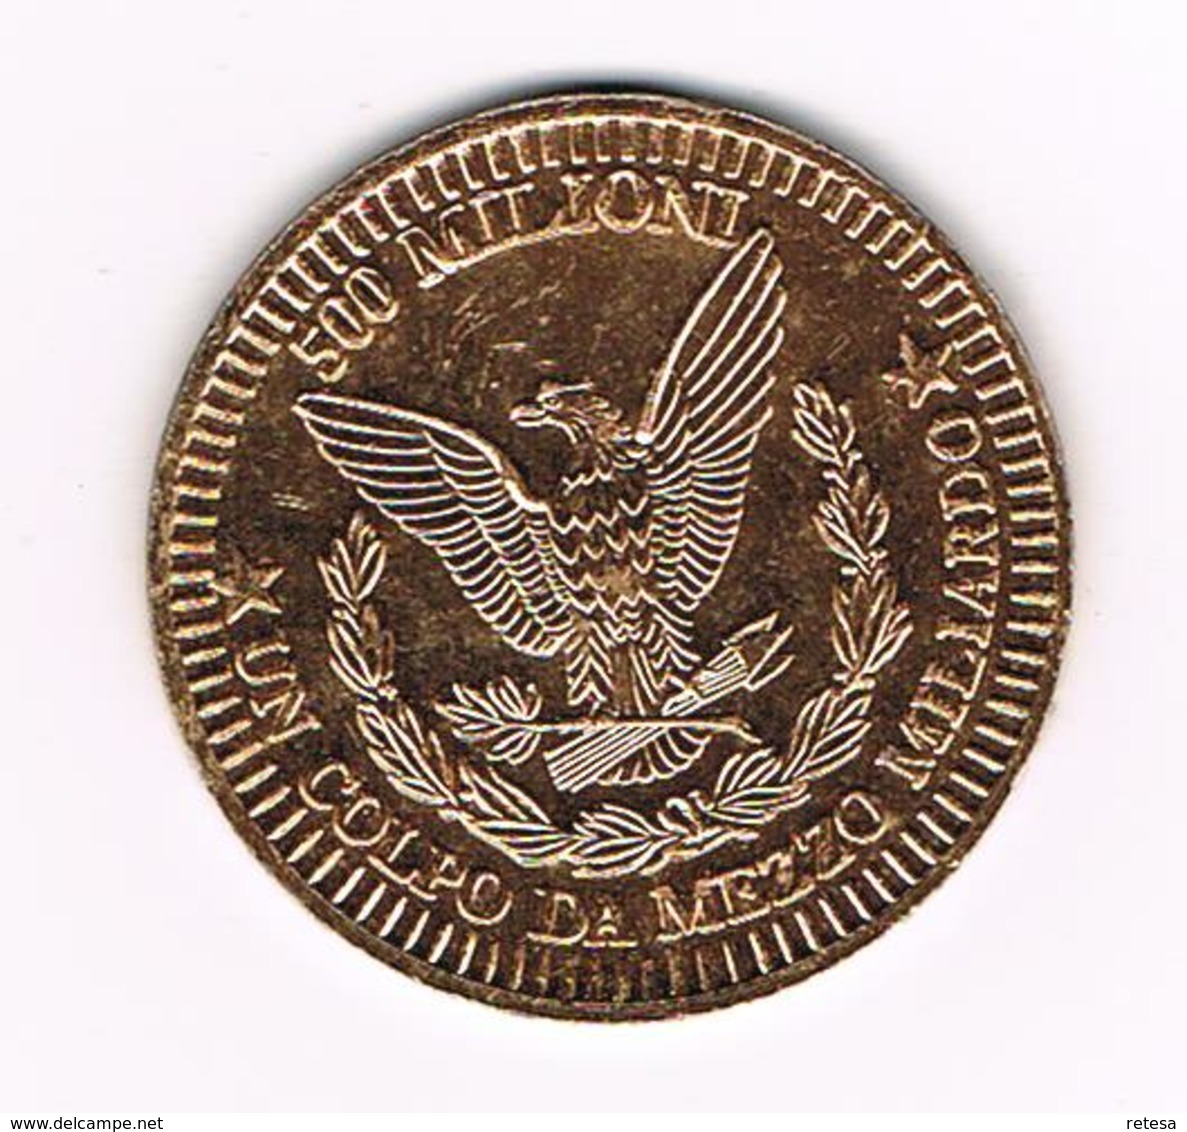 //  TOKEN  500 MILIONI  UN COLPO DA MEZZO MILIARDO - Souvenir-Medaille (elongated Coins)